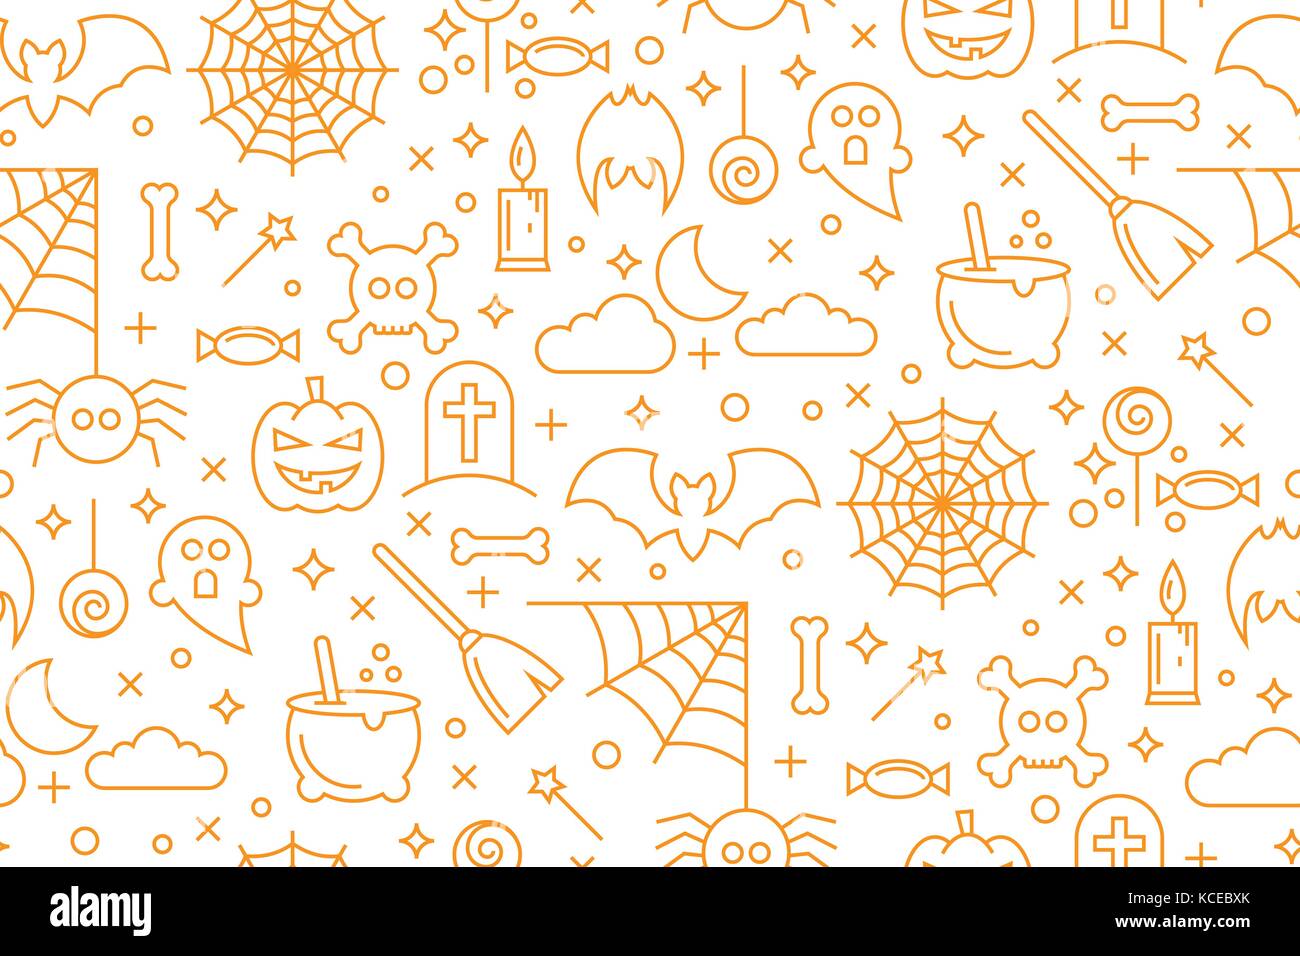 Happy halloween linea set di icone. illustrazione vettoriale di astratta seamless halloween pattern di sfondo come sfondo per il vostro design Illustrazione Vettoriale